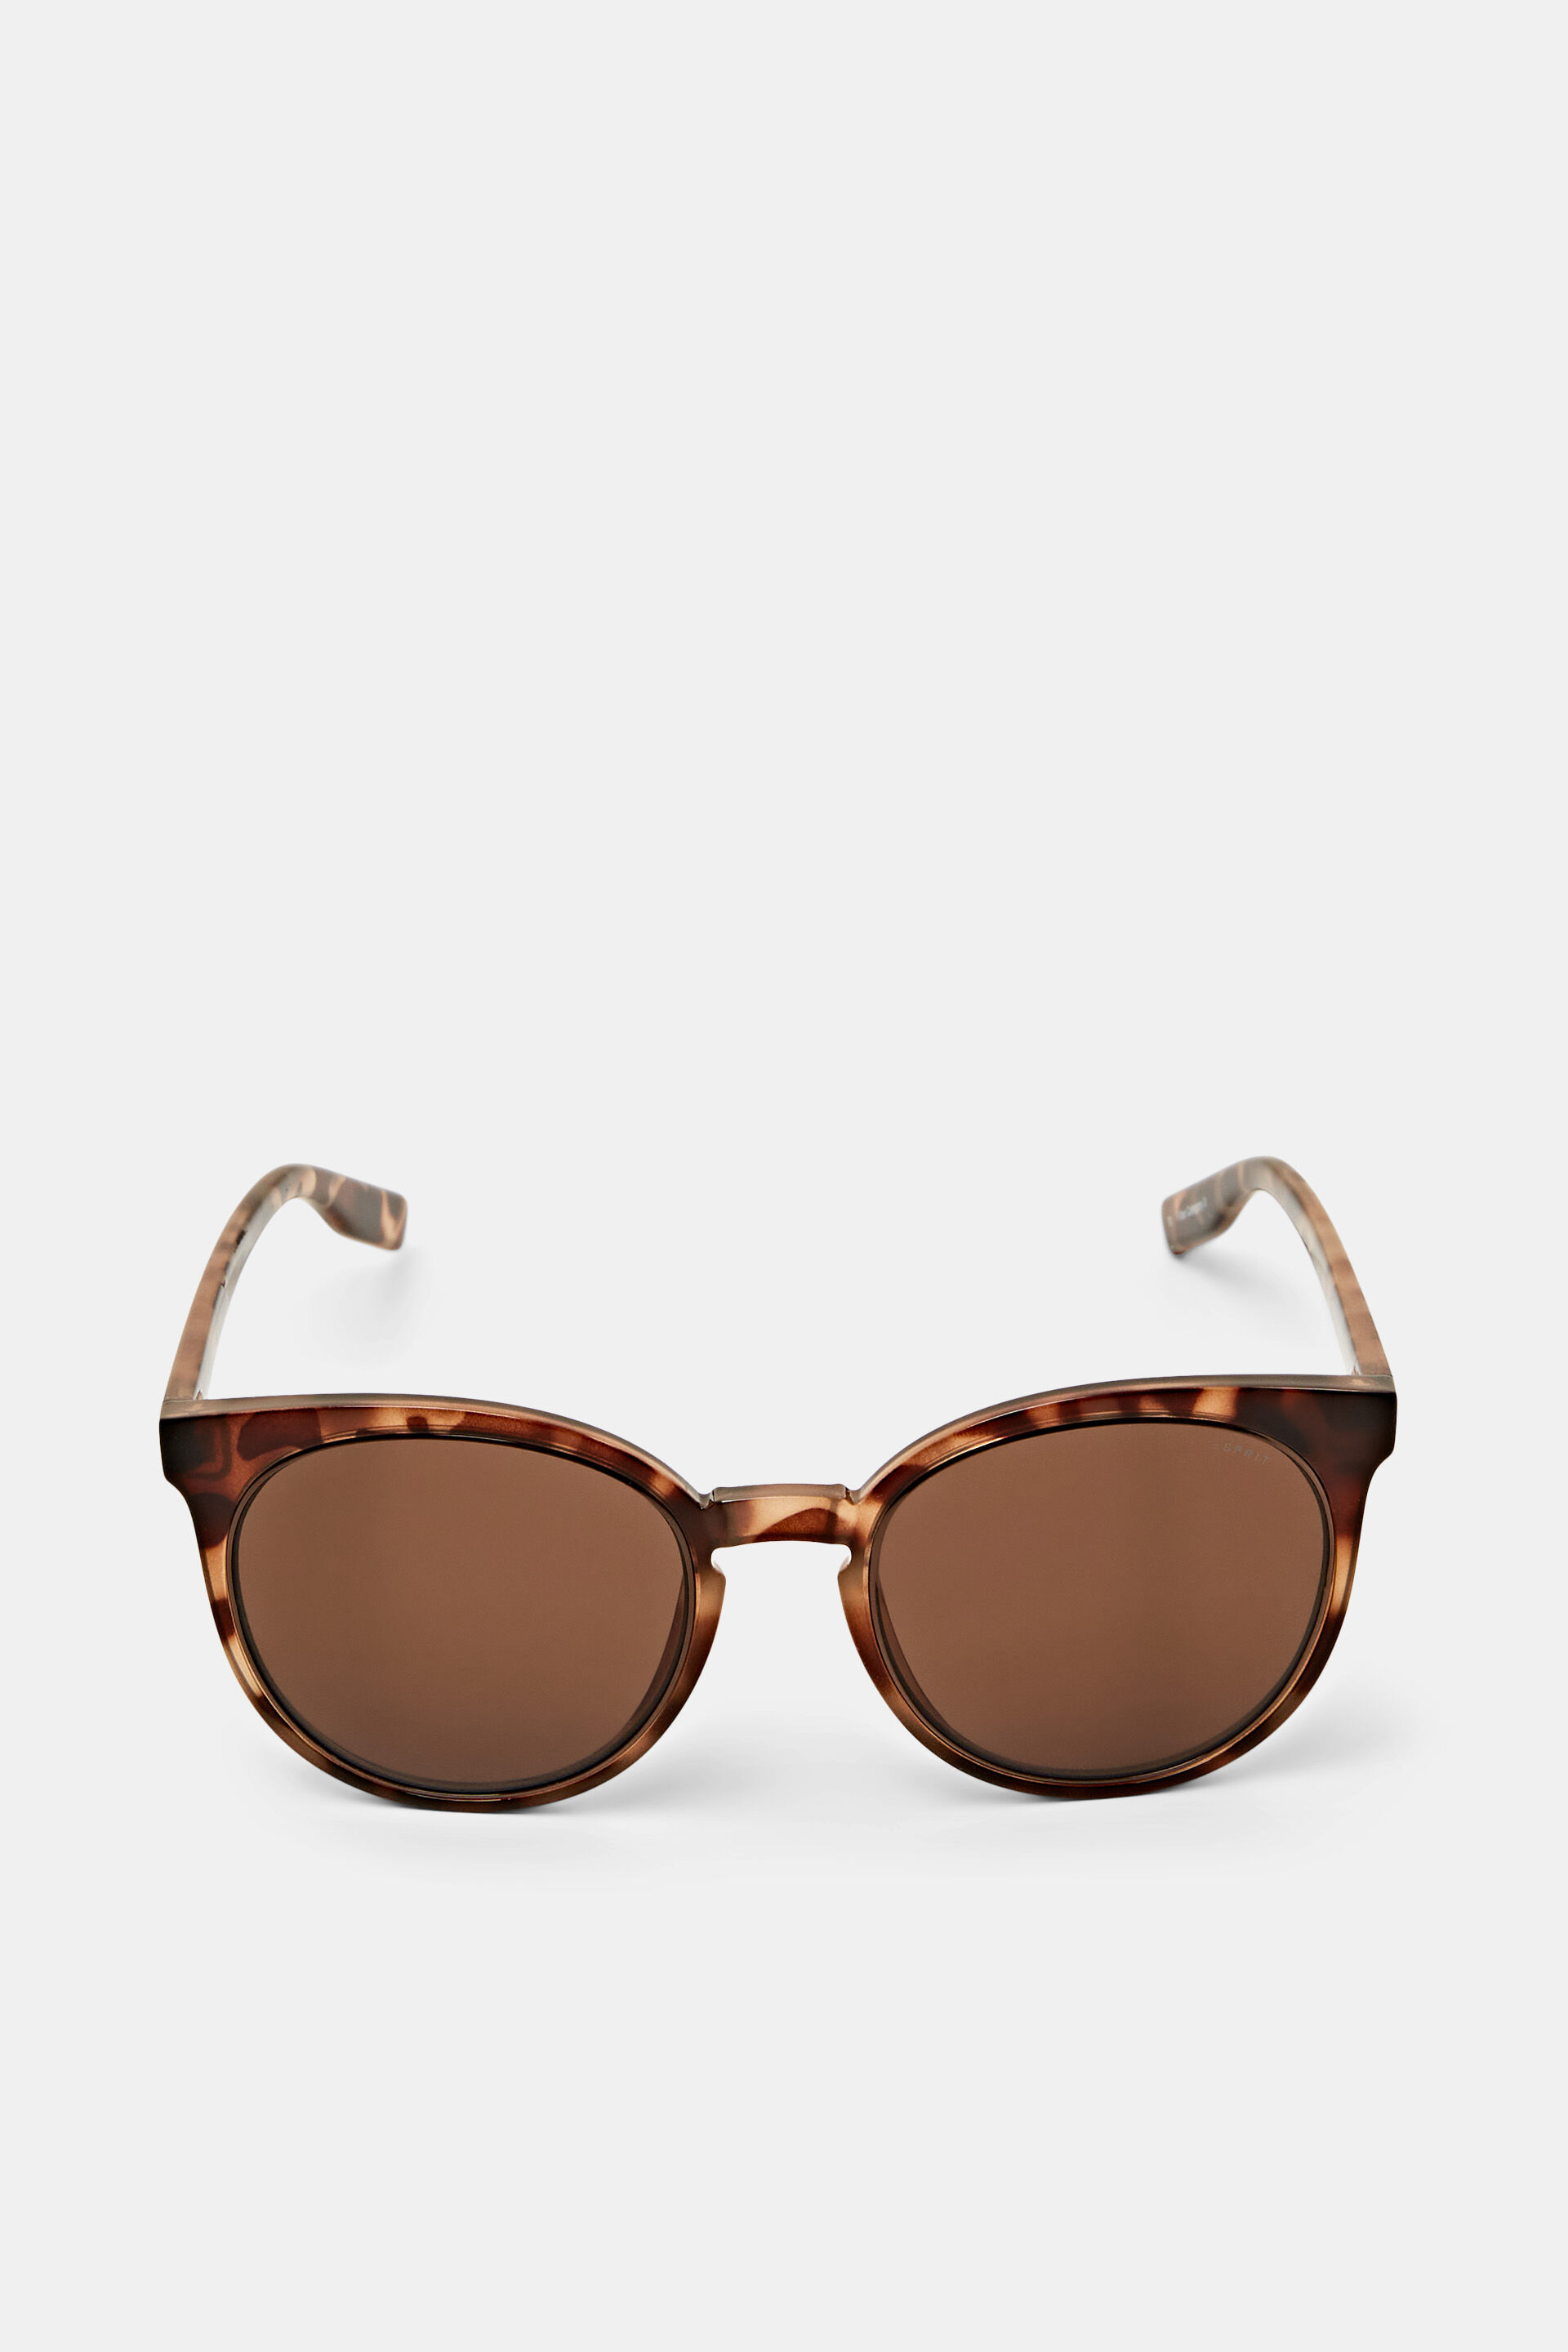 Esprit framed statement Round sunglasses